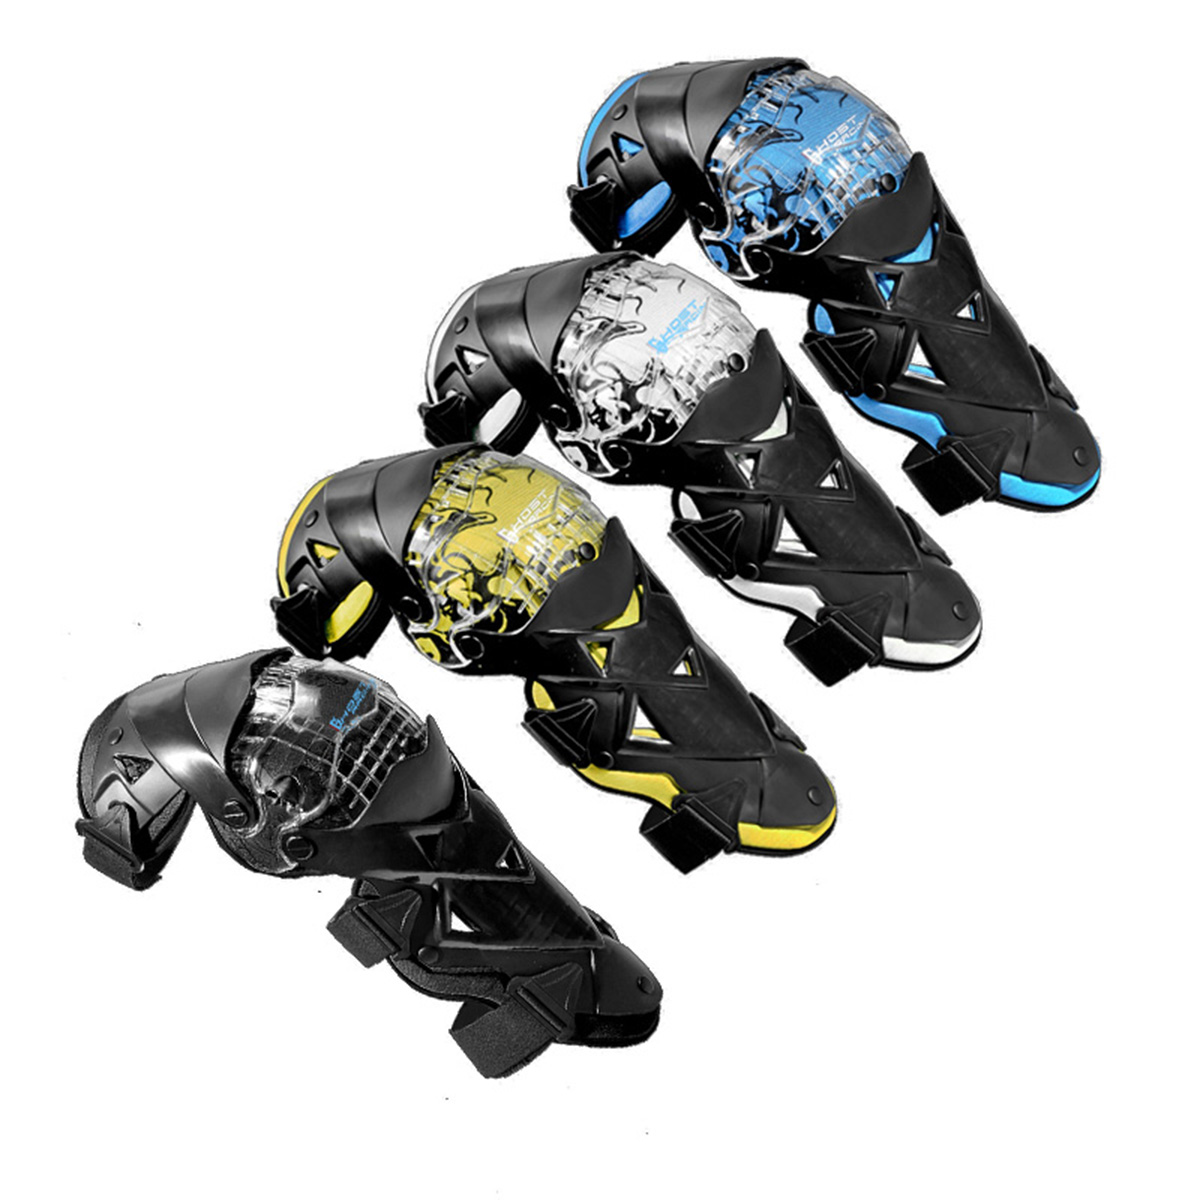 バイク用 オフロード プロテクター 膝防具 4色 送料無料 激安超特価 腿防具 ハイクオリティ